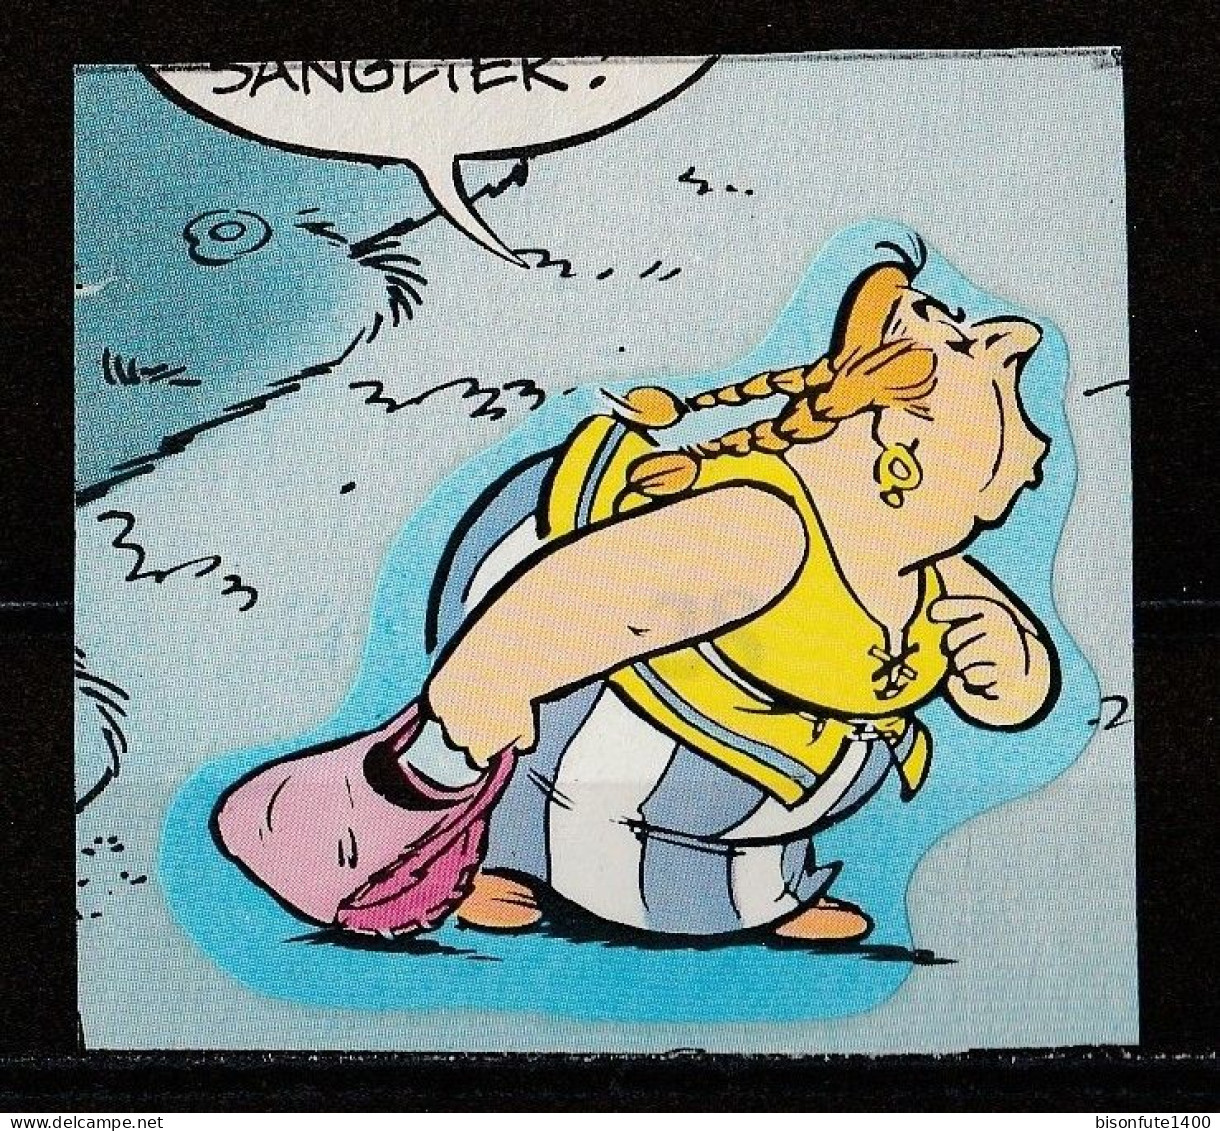 ASTERIX : Occasion : Vignette Autocollante N° 28 De L'album PANINI "Astérix" De 1987. ( Voir Description ) - Franse Uitgave